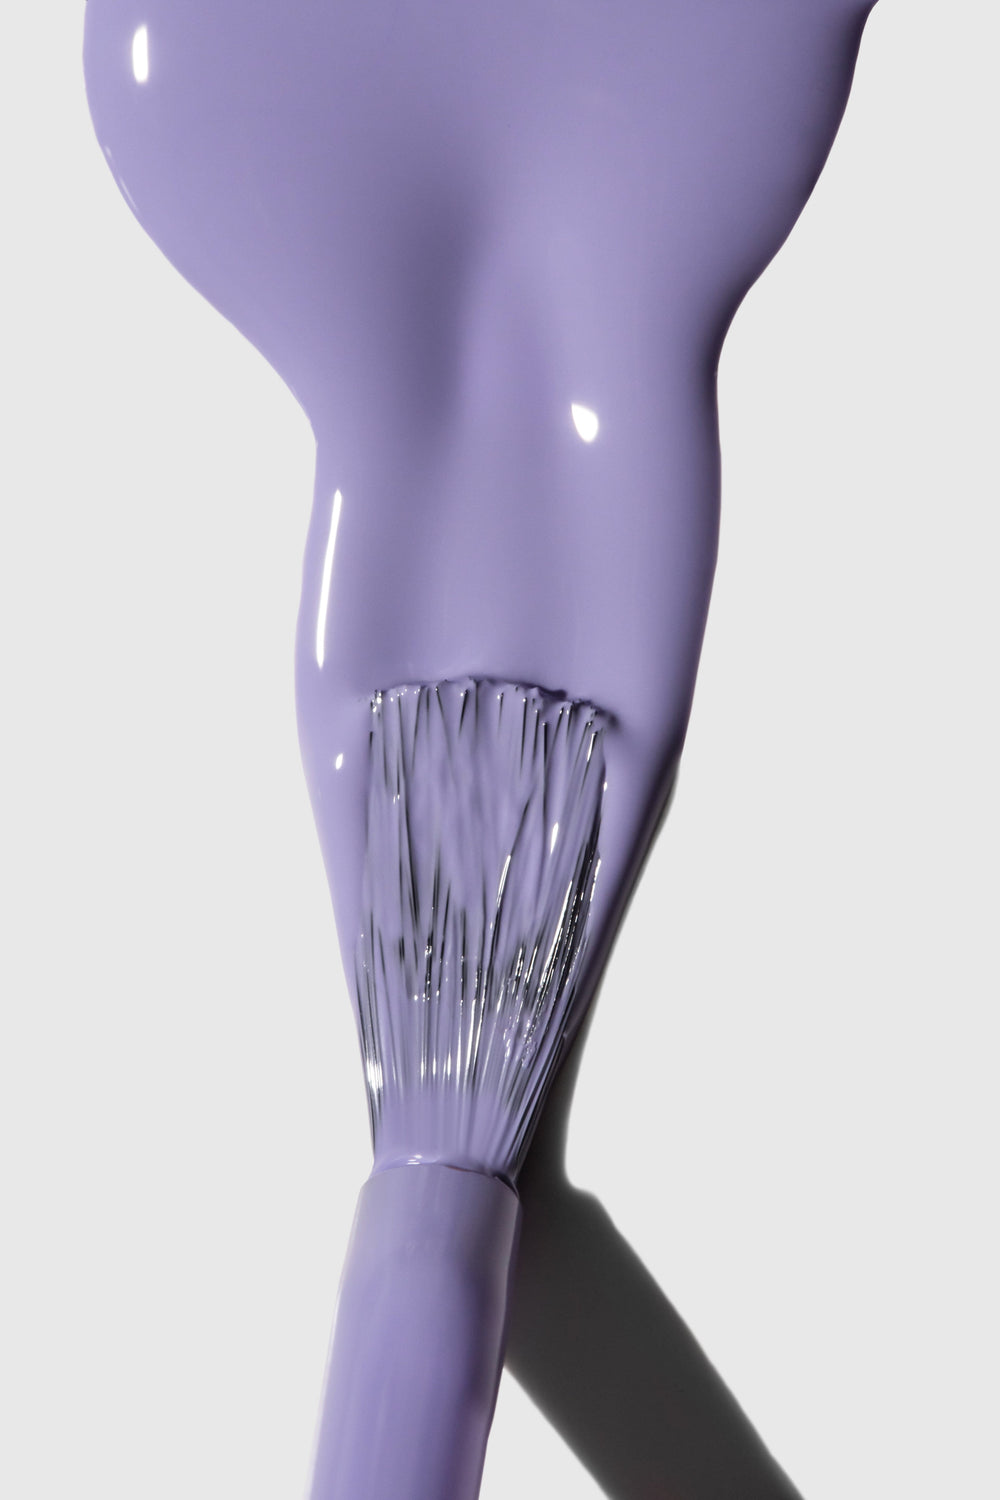 Gitti - Nail Polish 167 - Digital Lavender Neglelak 